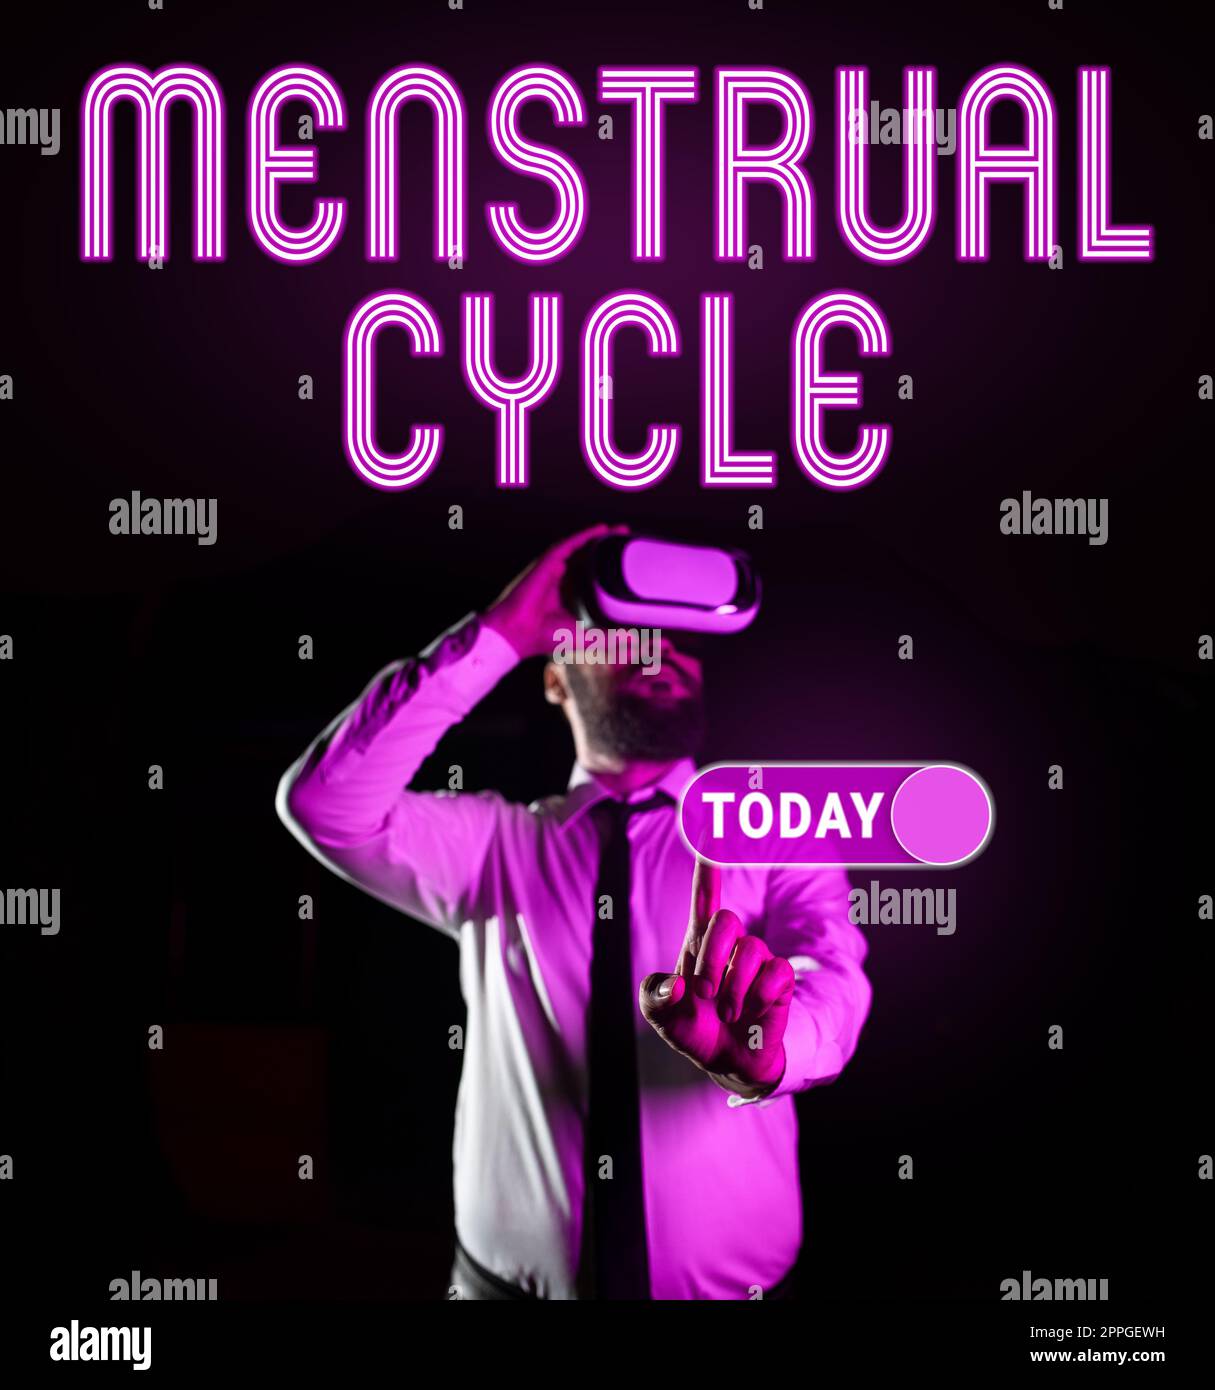 Légende présentant le cycle menstruel. Mot pour le cycle mensuel des changements dans les ovaires et la muqueuse de l'utérus Banque D'Images